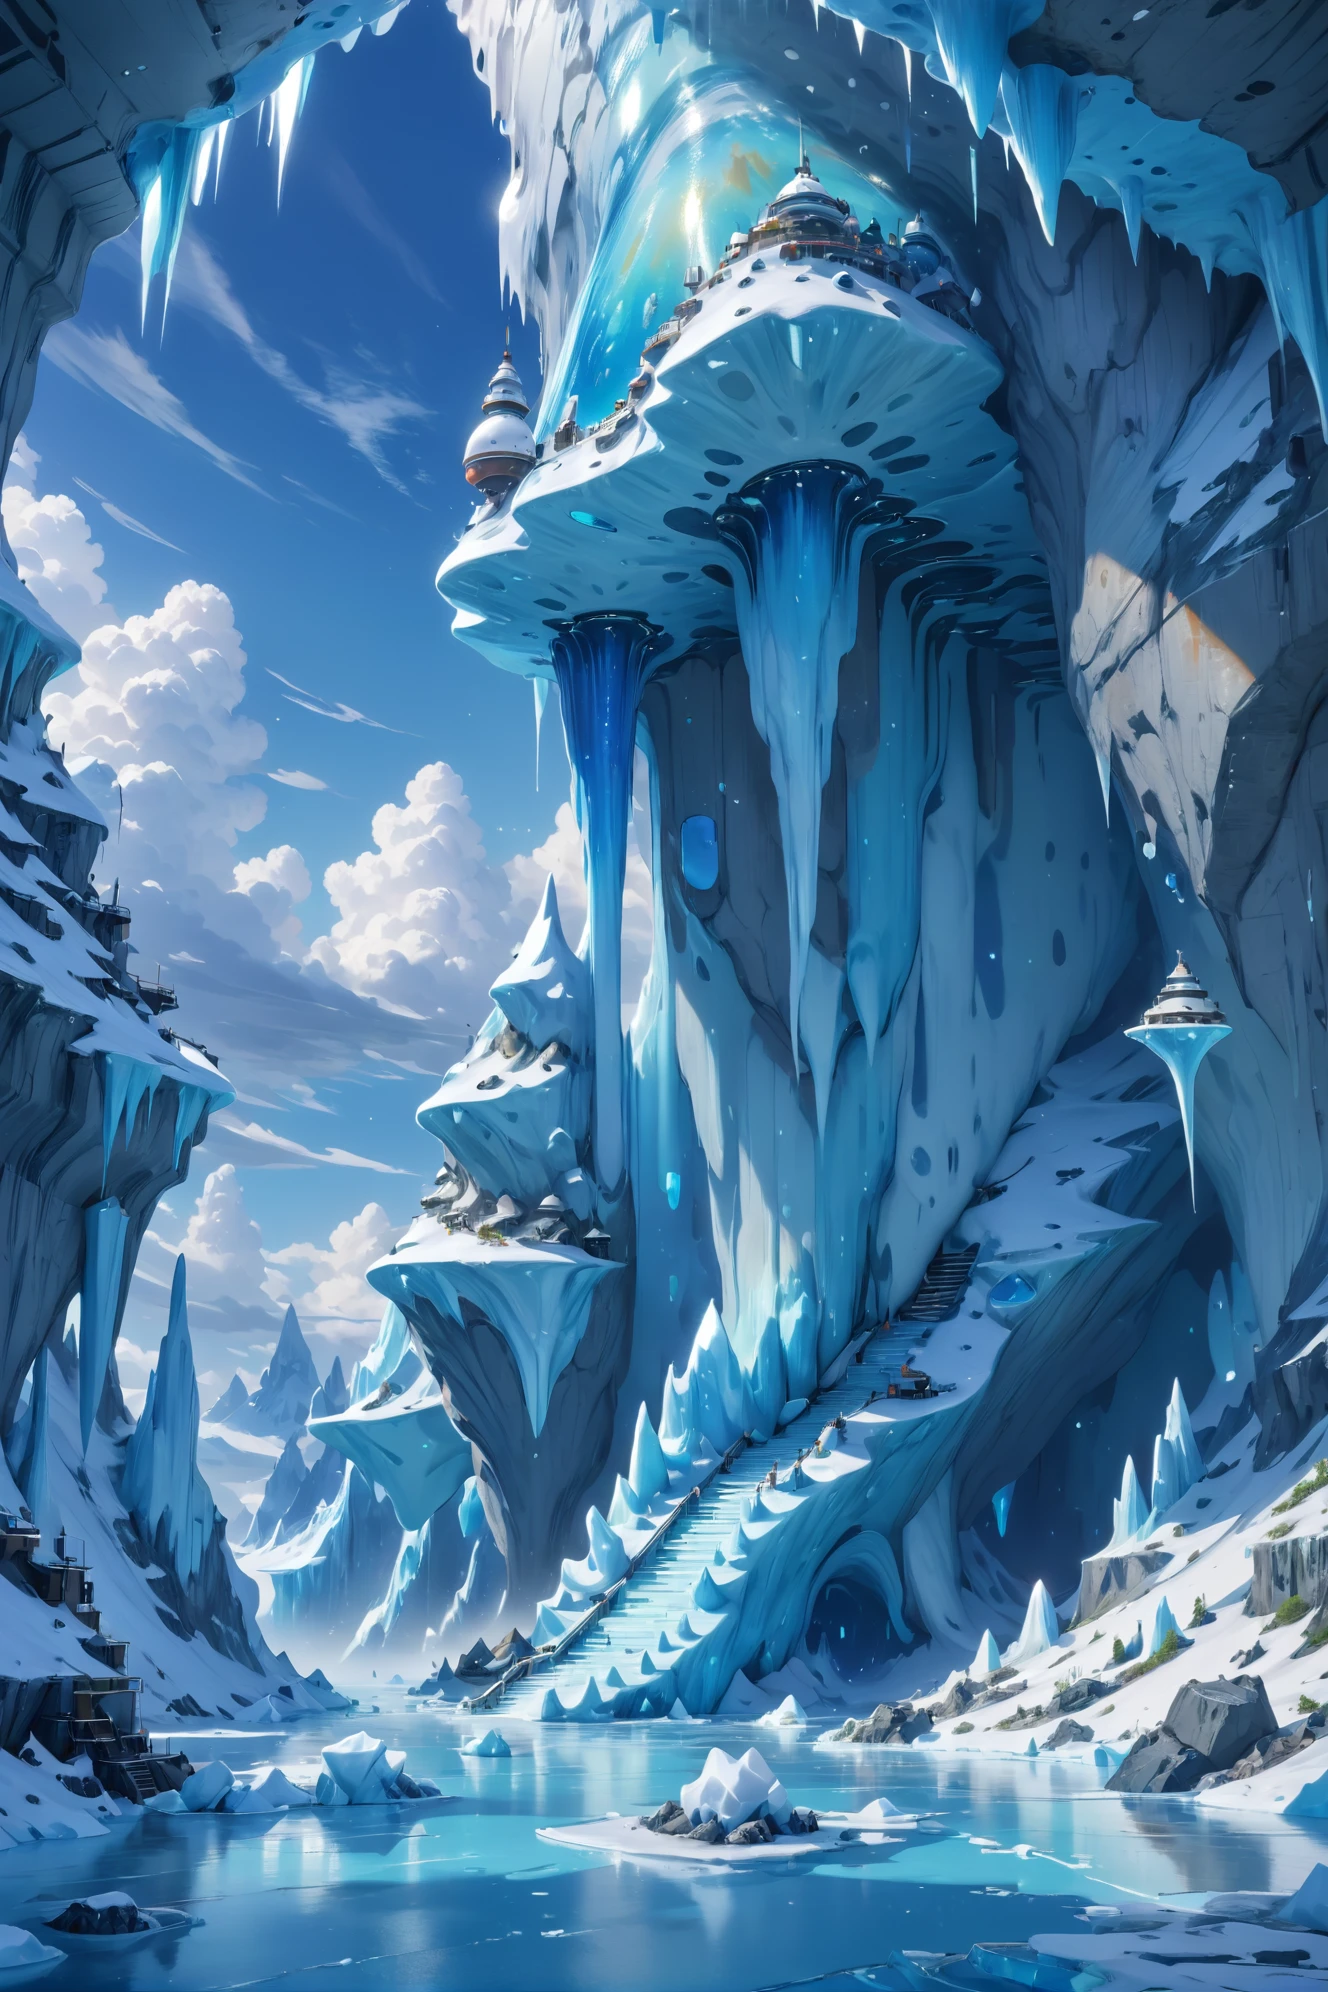 اللوحة الرقمية, وقت الظهيرة, السماء الزرقاء, سحاب, منظر طبيعى, في نقاط استكشاف الجليد تحت السطح, بواسطة آرون بيك, 8 كيلو, تفاصيل عالية جدًا, تحفة